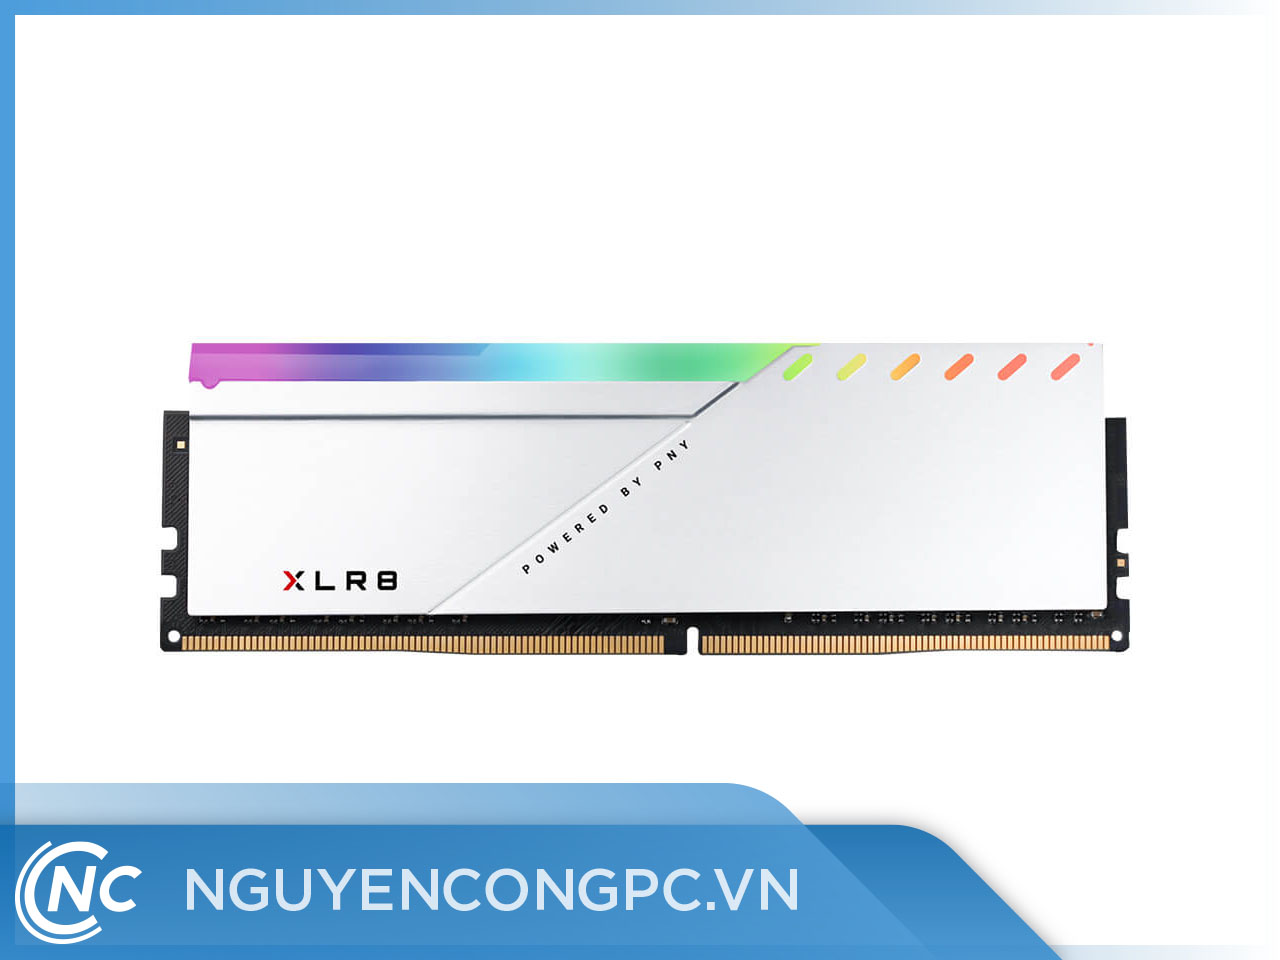 Ram PNY 8GB XLR8 Gaming DDR4 3200MHz Silver RGB 